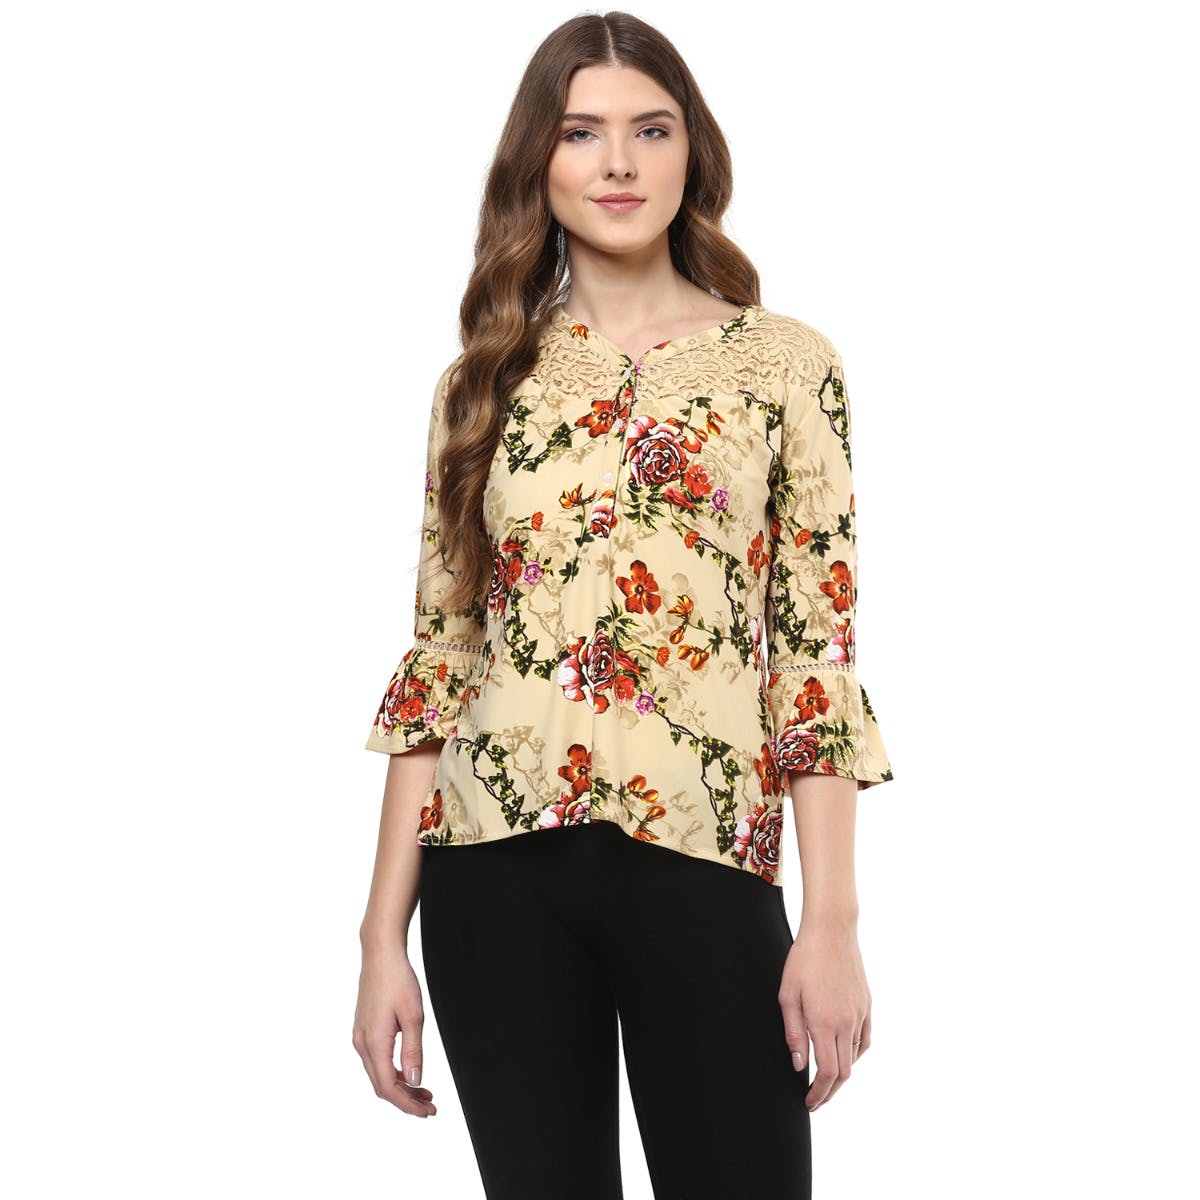 Get Floral Print Lace Detail Shoulder Shirt at ₹ 525 | LBB Shop